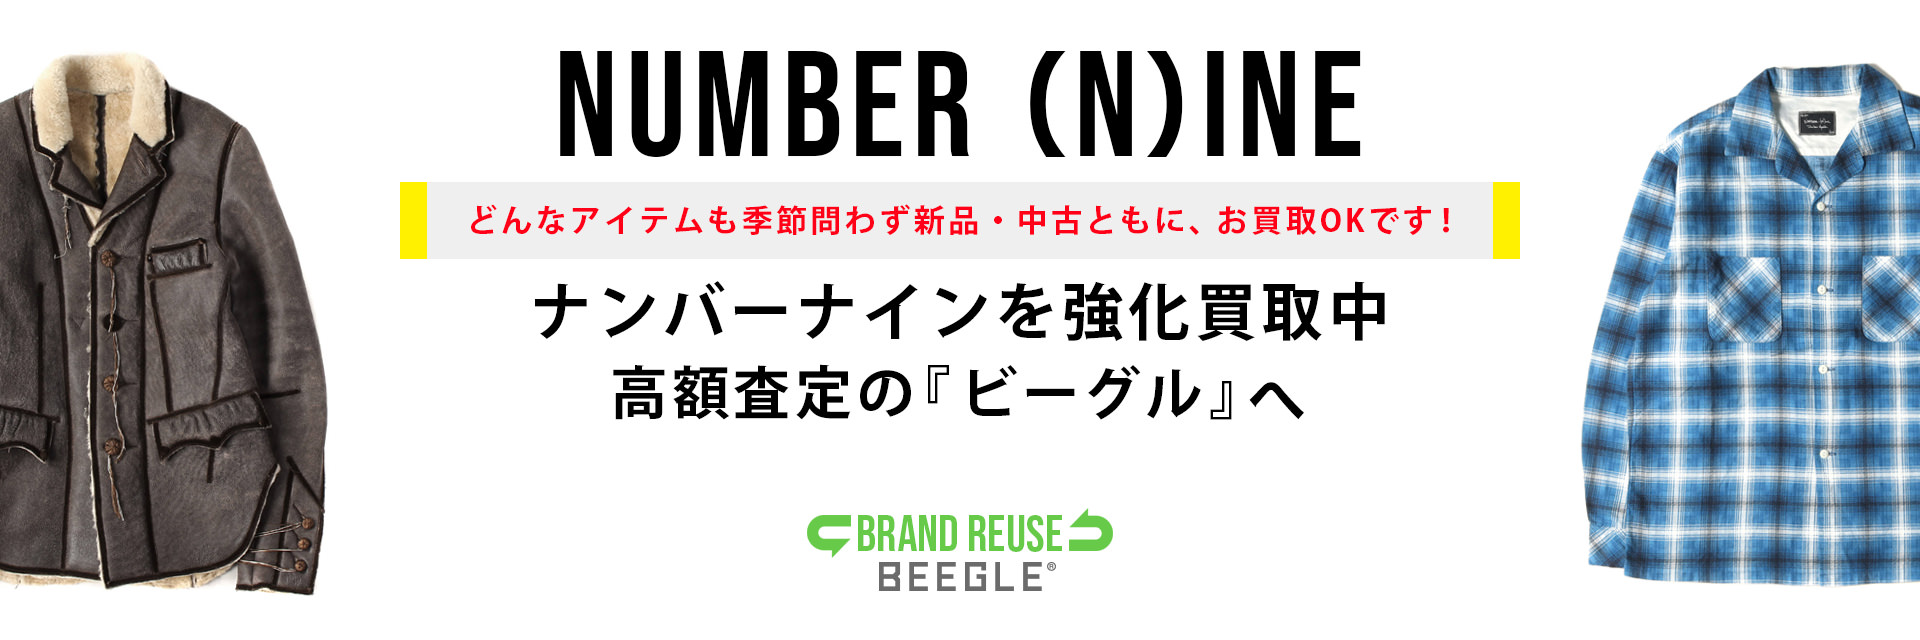 NUMBER(N)INE